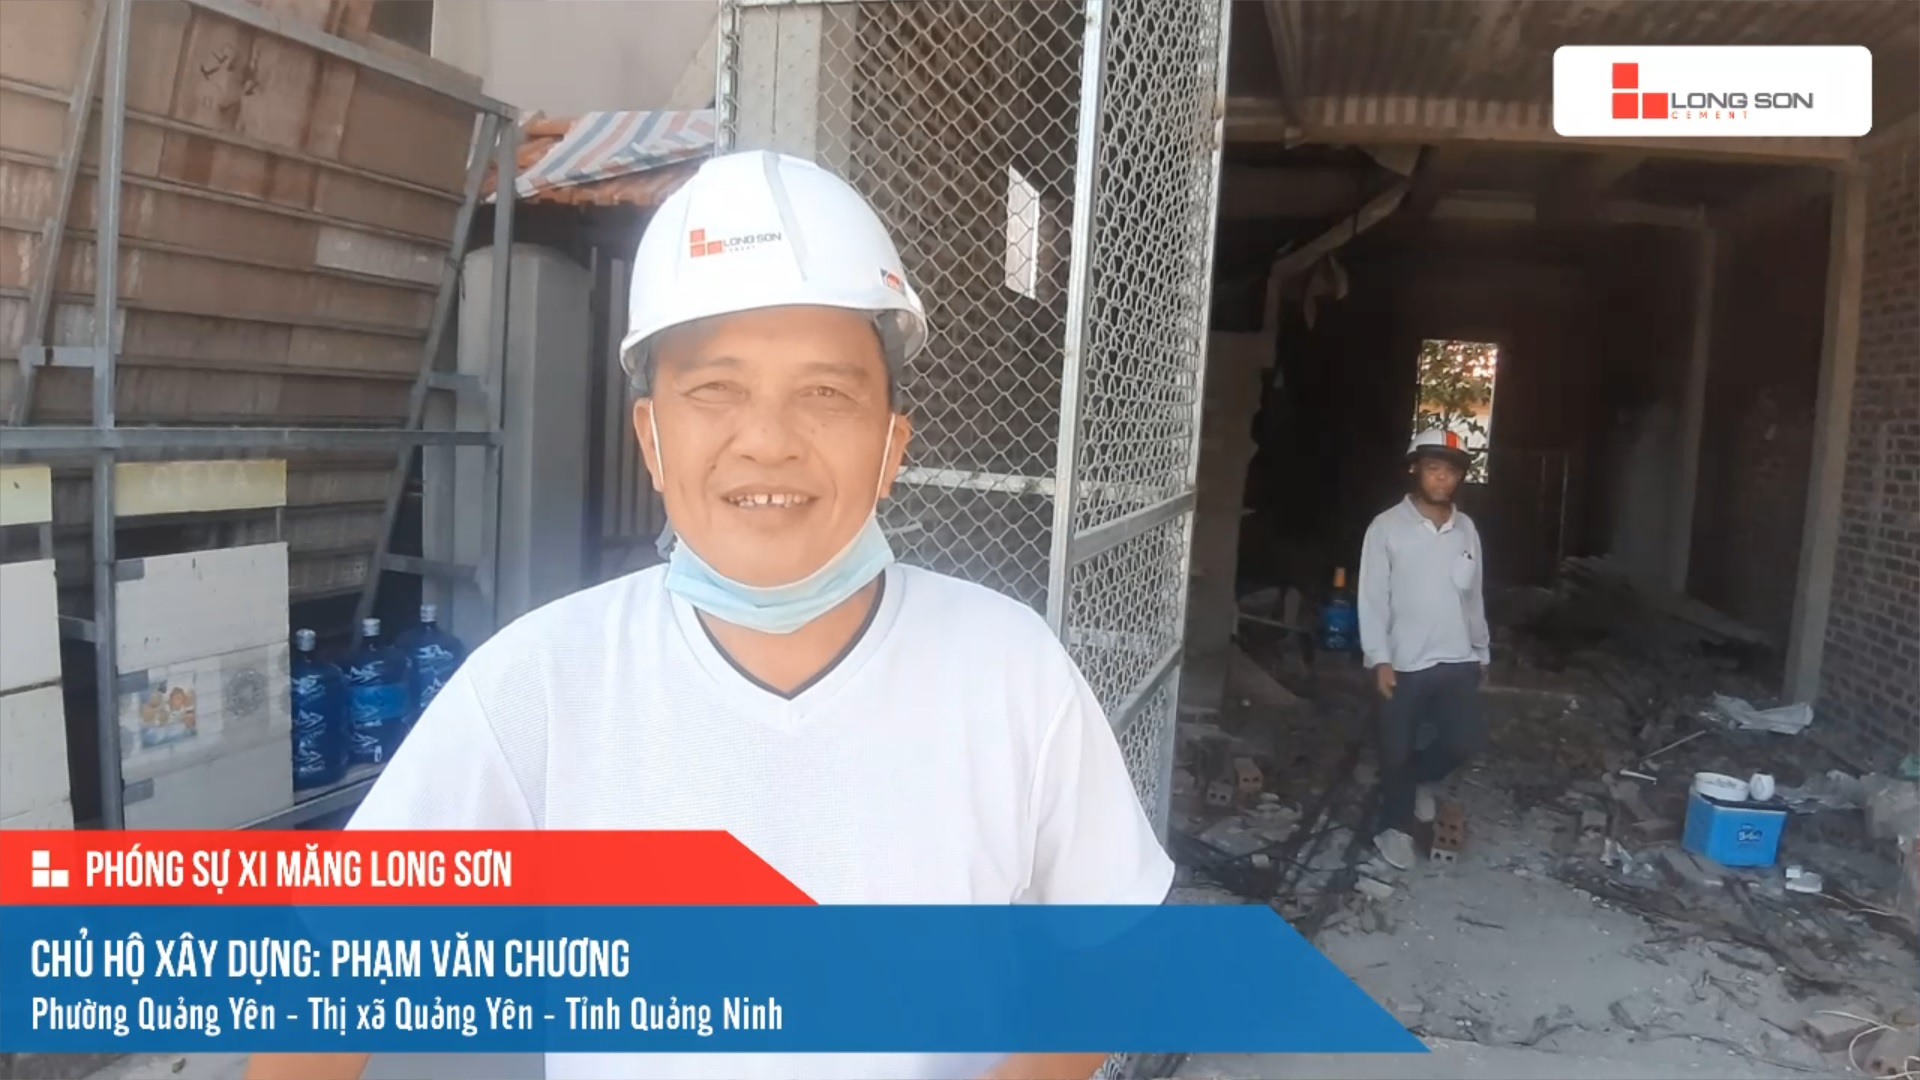 Phóng sự công trình sử dụng xi măng Long Sơn tại Quảng Ninh ngày 14/07/2021